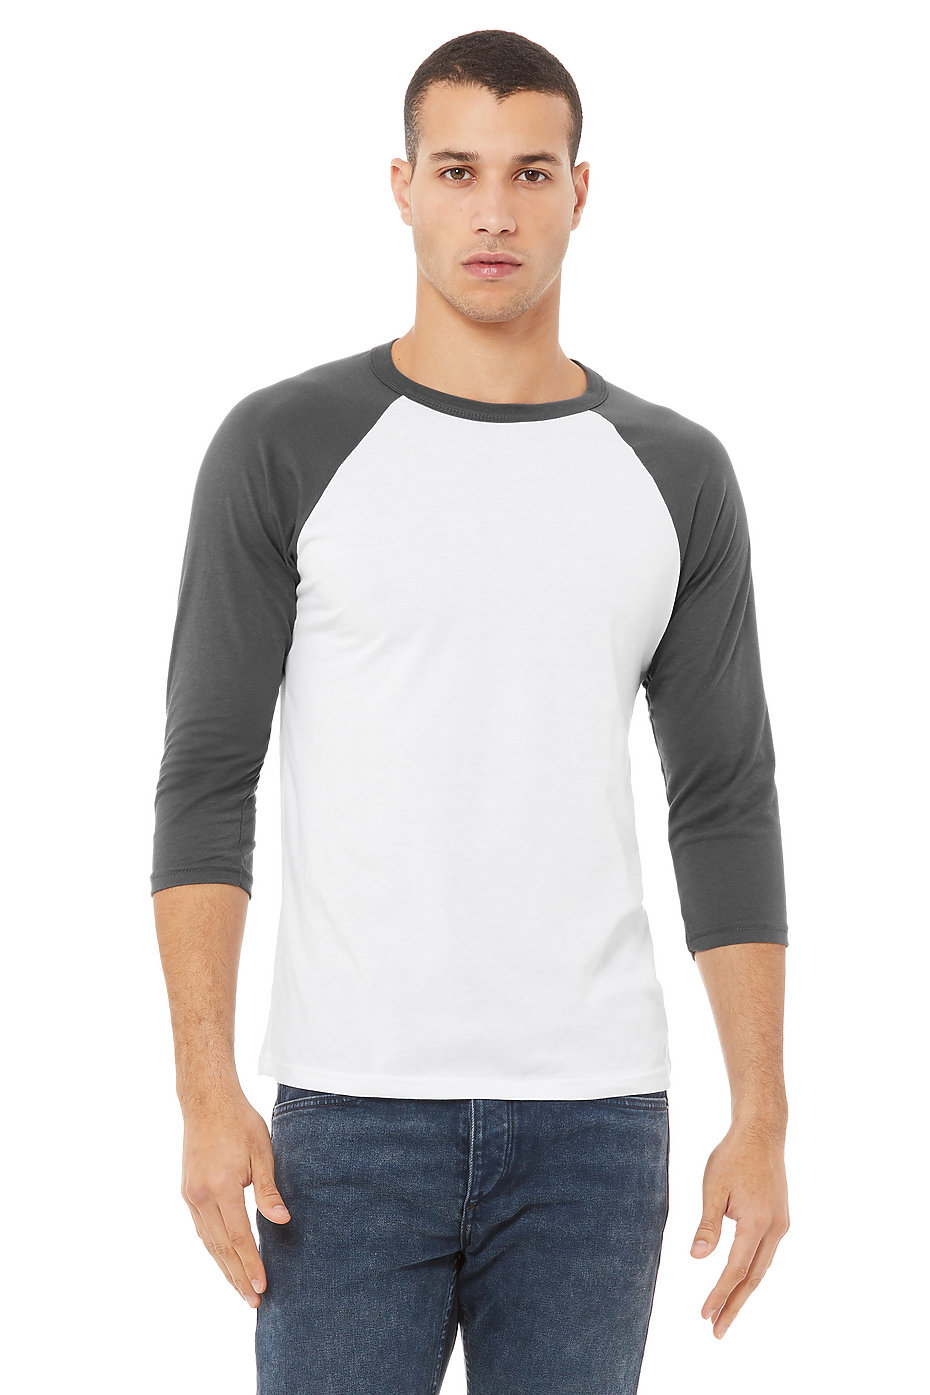 Dance Gavin Dance Womens Casual Round Collar 3/4 Sleeve Shoulder Baseball T-Shirt Sports Top